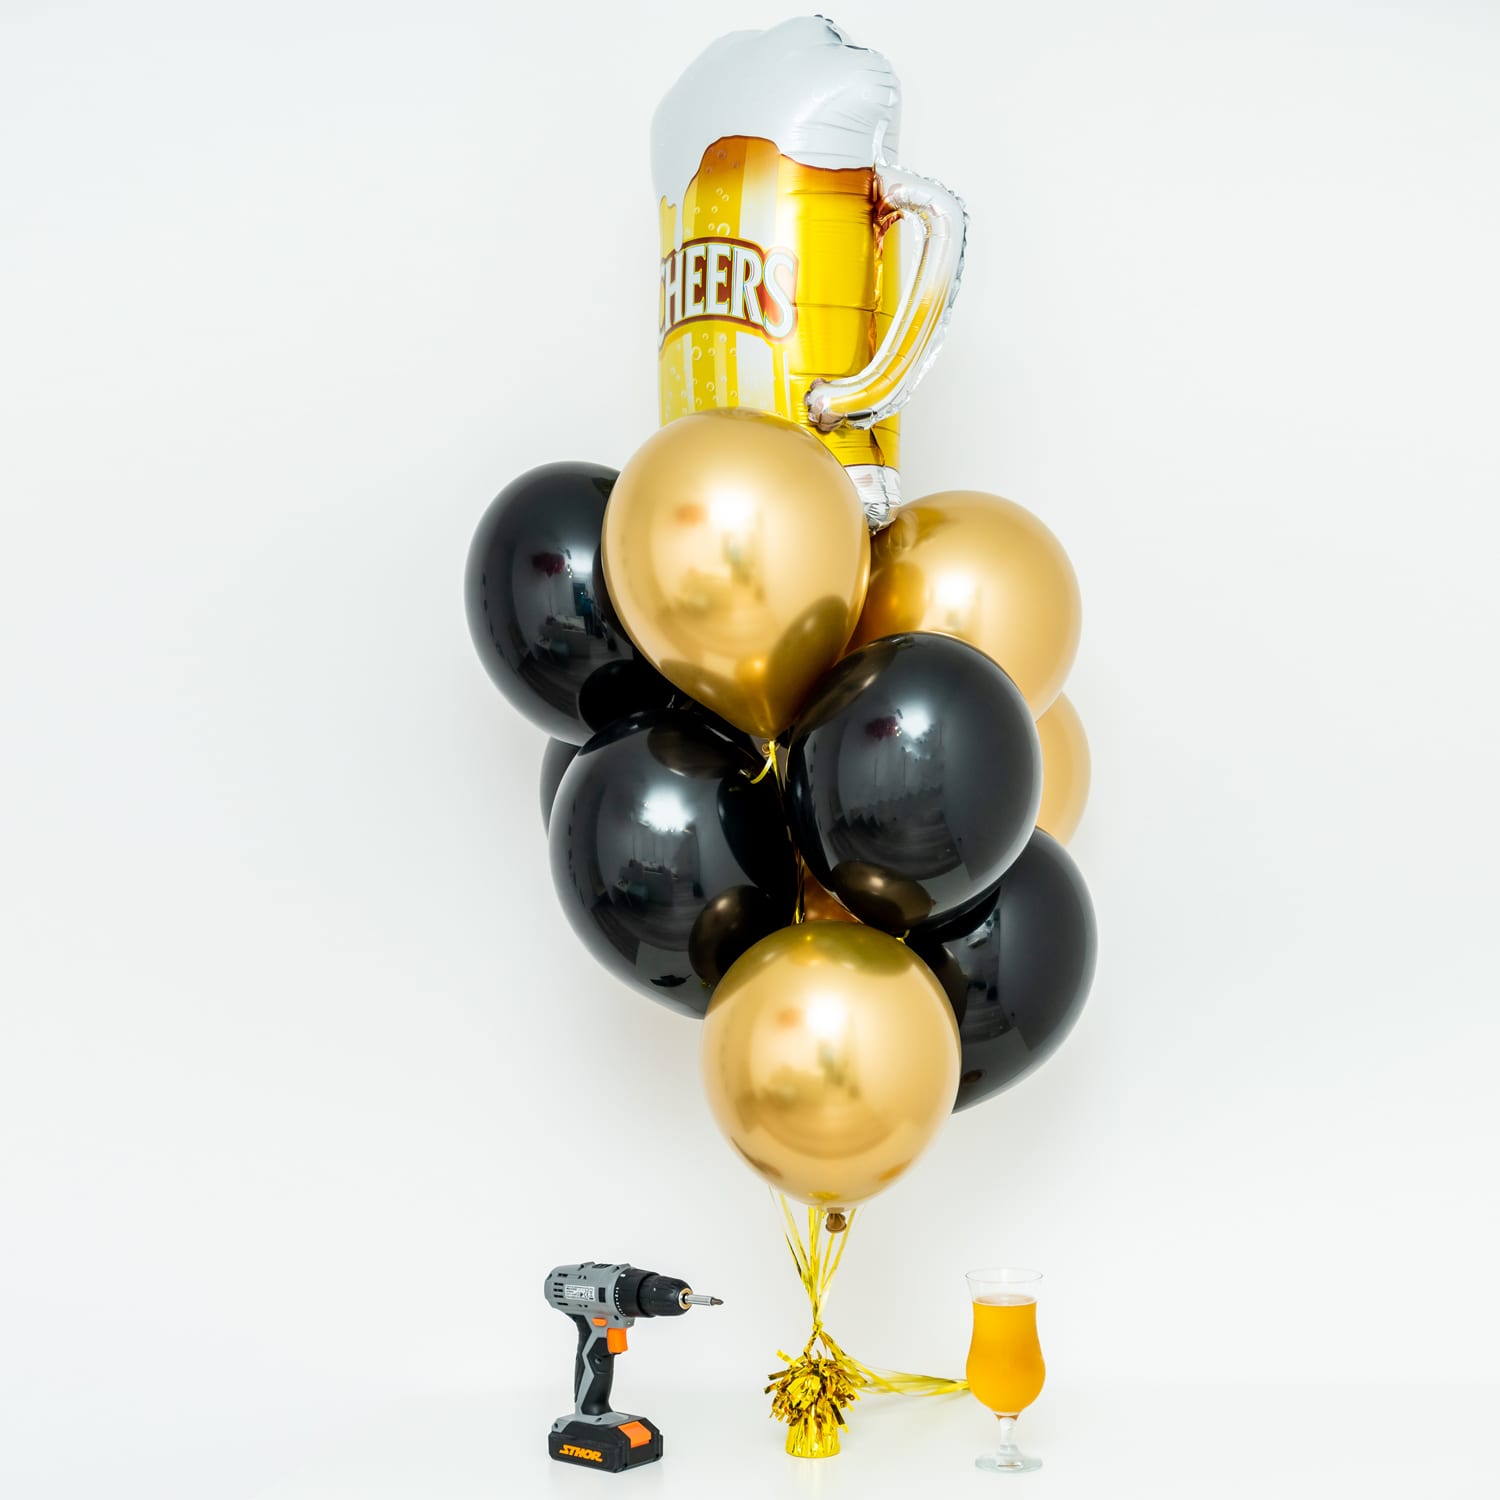 Bukiet balonowy: Beer Time, napełniony helem Balony z helem Szalony.pl - Sklep imprezowy 3